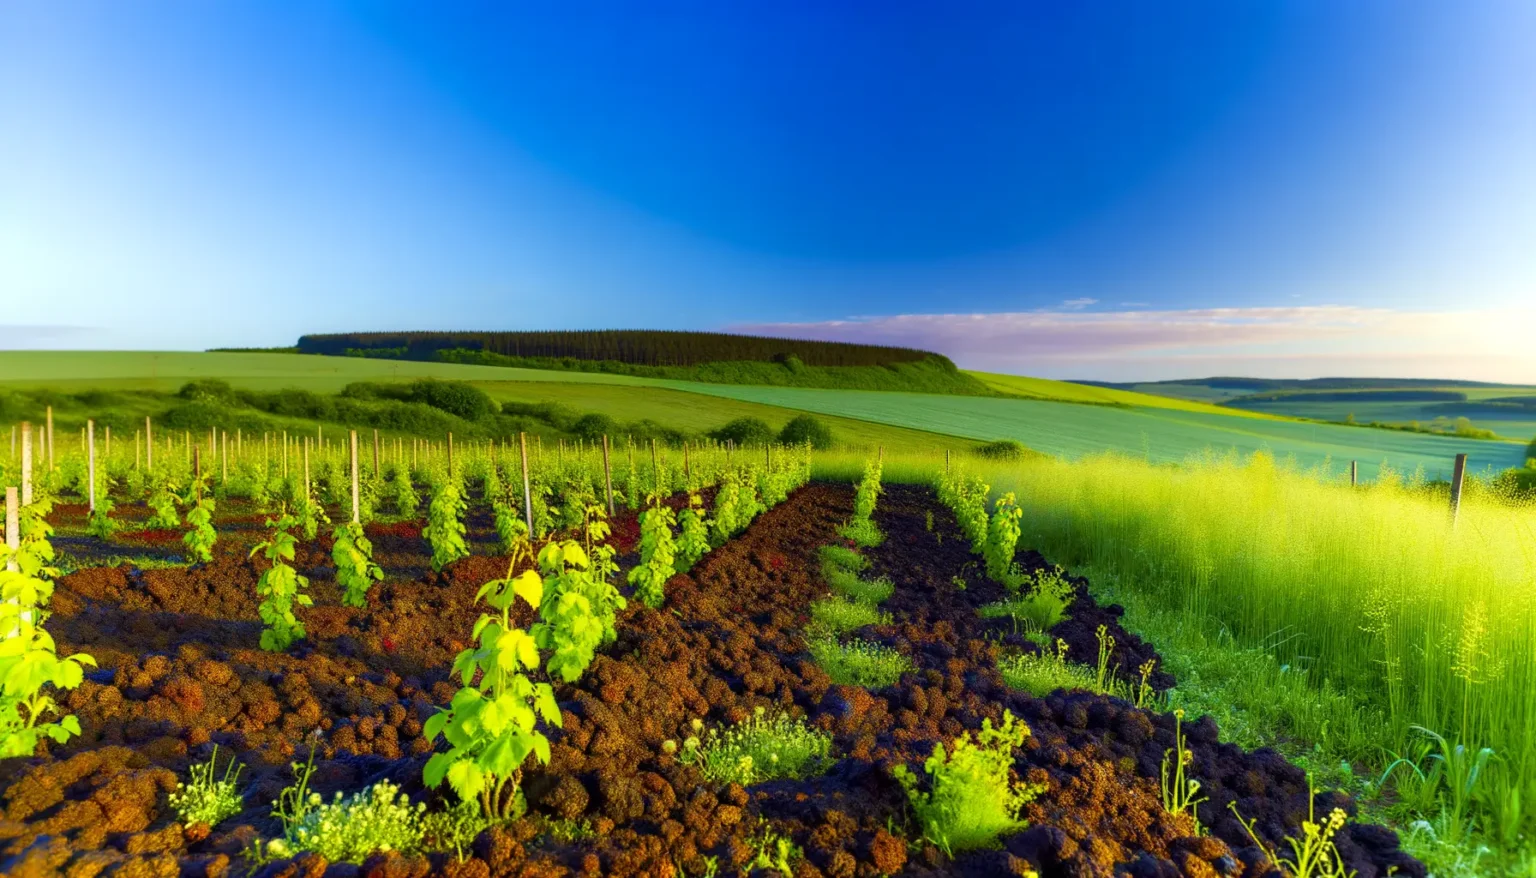 Blick auf ein fruchtbares Ackerland bei Sonnenaufgang mit jungen Pflanzen, die in Reihen auf dunklem, humusreichem Boden wachsen. Im Hintergrund erstrecken sich grüne Felder bis zum Horizont unter einem leuchtend blauen Himmel mit sanftem Lichtgradienten.